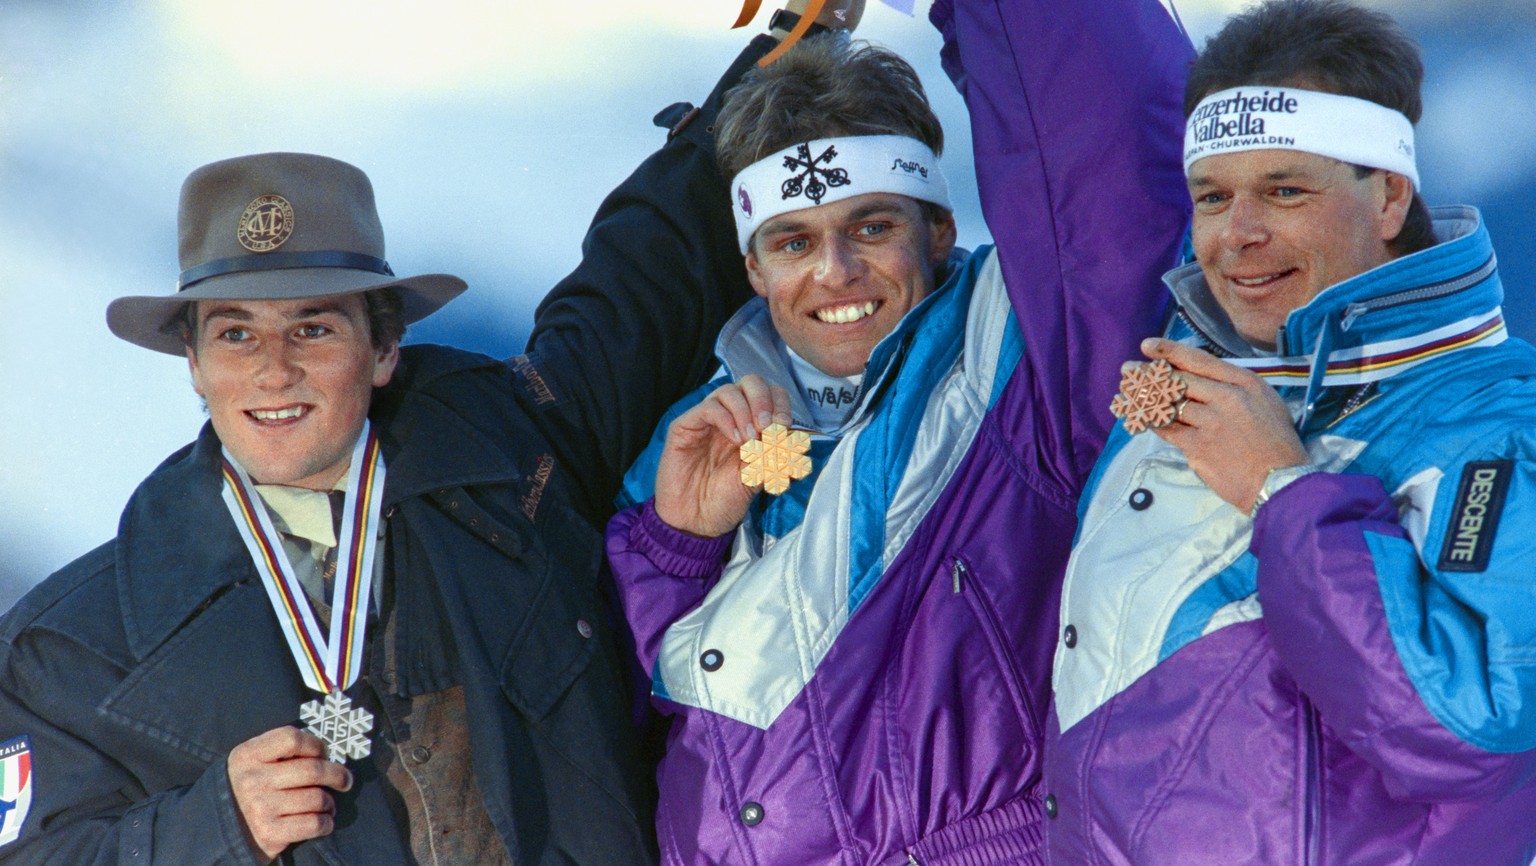 Franz Heinzer, Mitte, gewinnt bei den Alpinen Skiweltmeisterschaften in Saalbach die Abfahrt vor Peter Runggaldier, links, und Daniel Mahrer, rechts, aufgenommen am 27. Januar 1991. (KEYSTONE/Str)